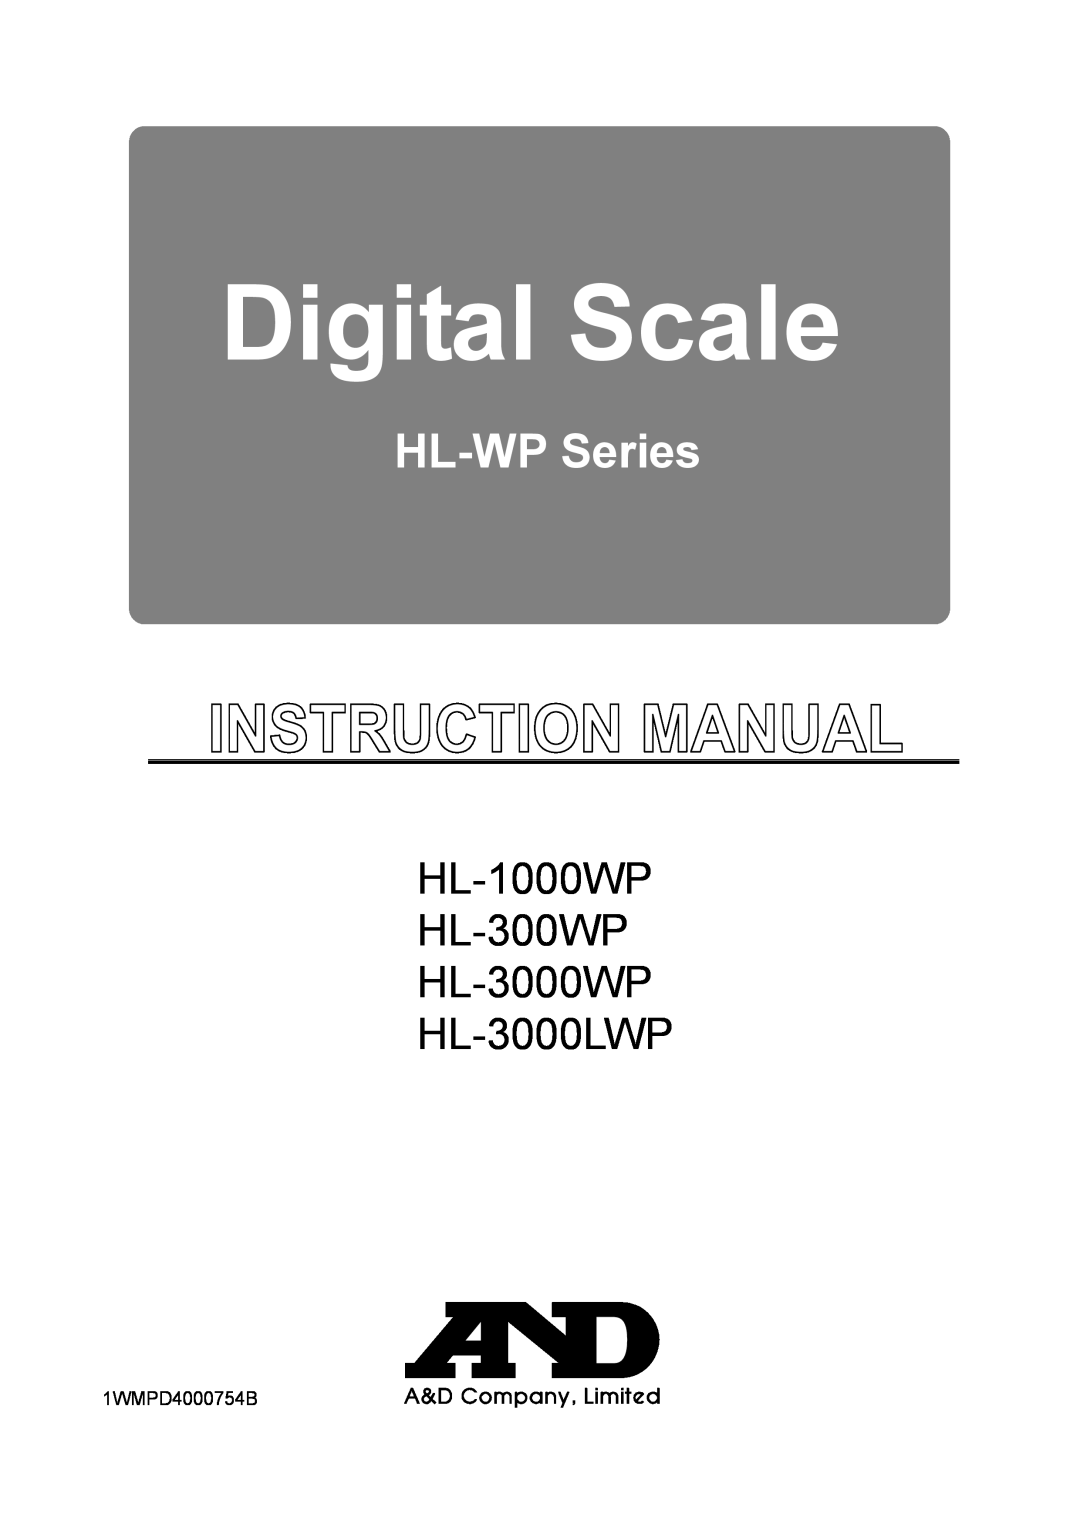 A&D manual Digital Scale, HL-WP Series, HL-1000WP HL-300WP HL-3000WP HL-3000LWP 